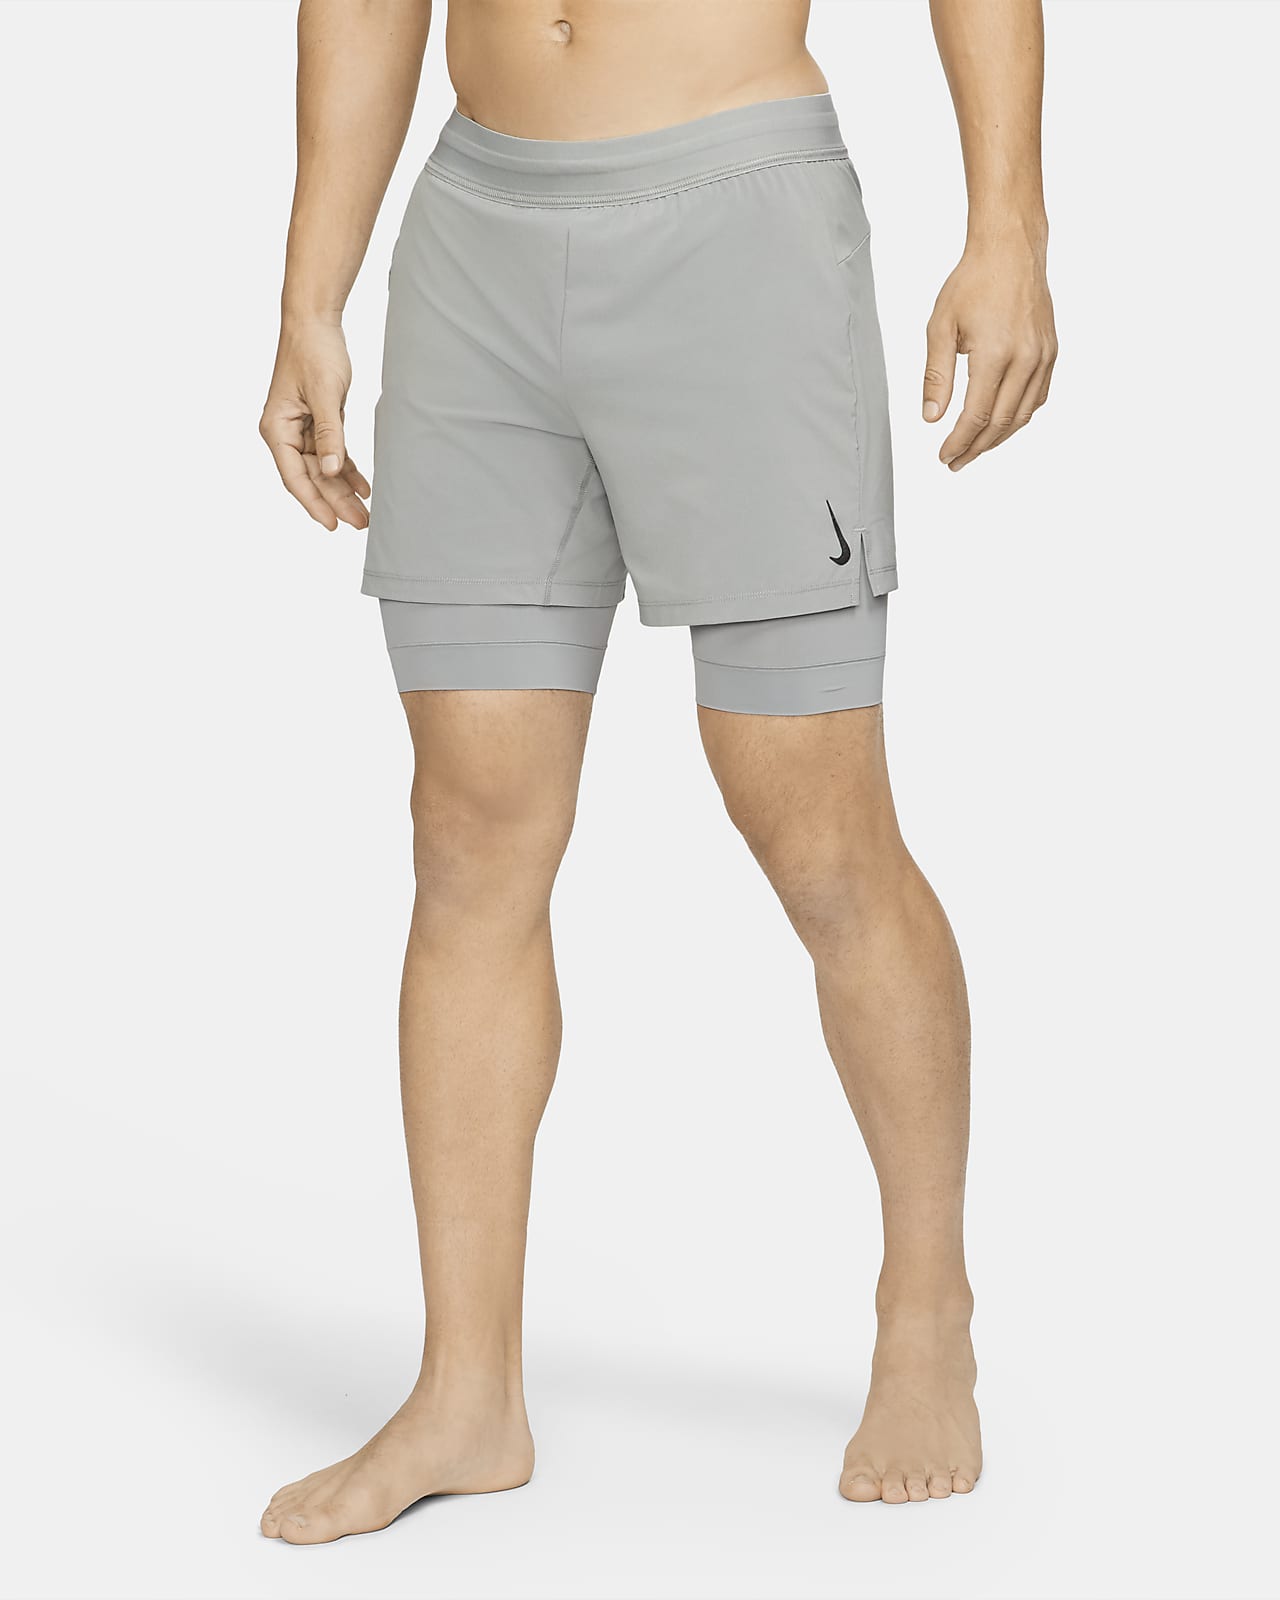 nike yoga men's shorts